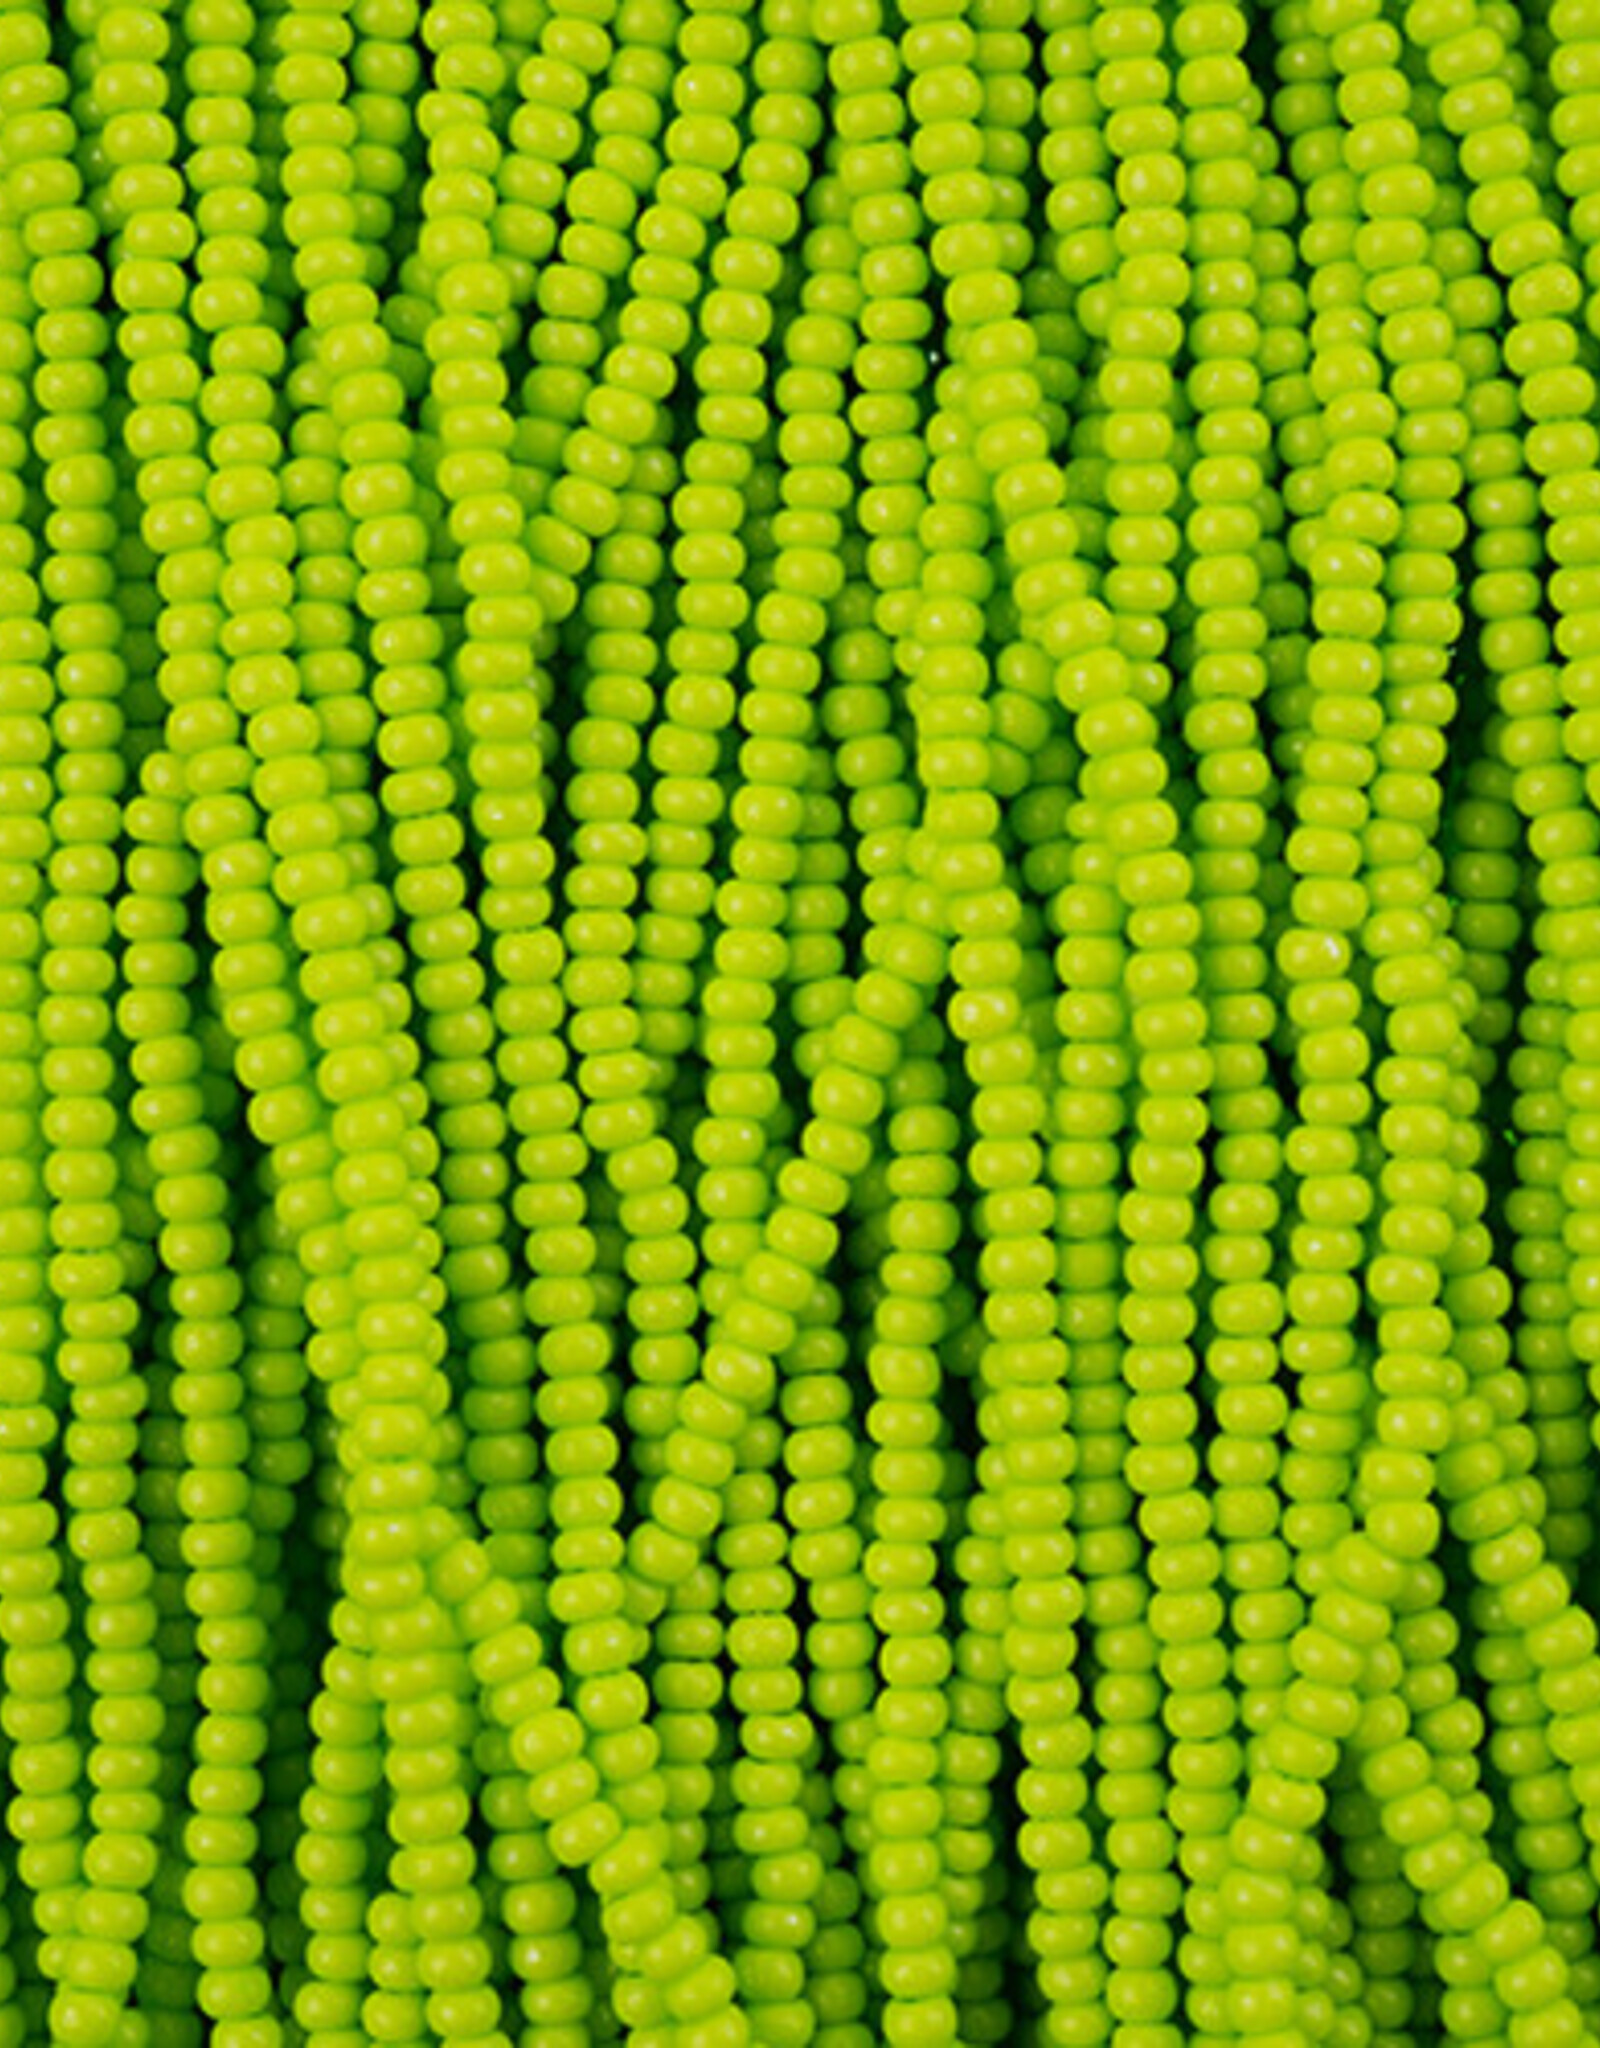 Preciosa Czech Seed Bead Seed Beads 10/0 Terra Intensive LT. Green 3118S